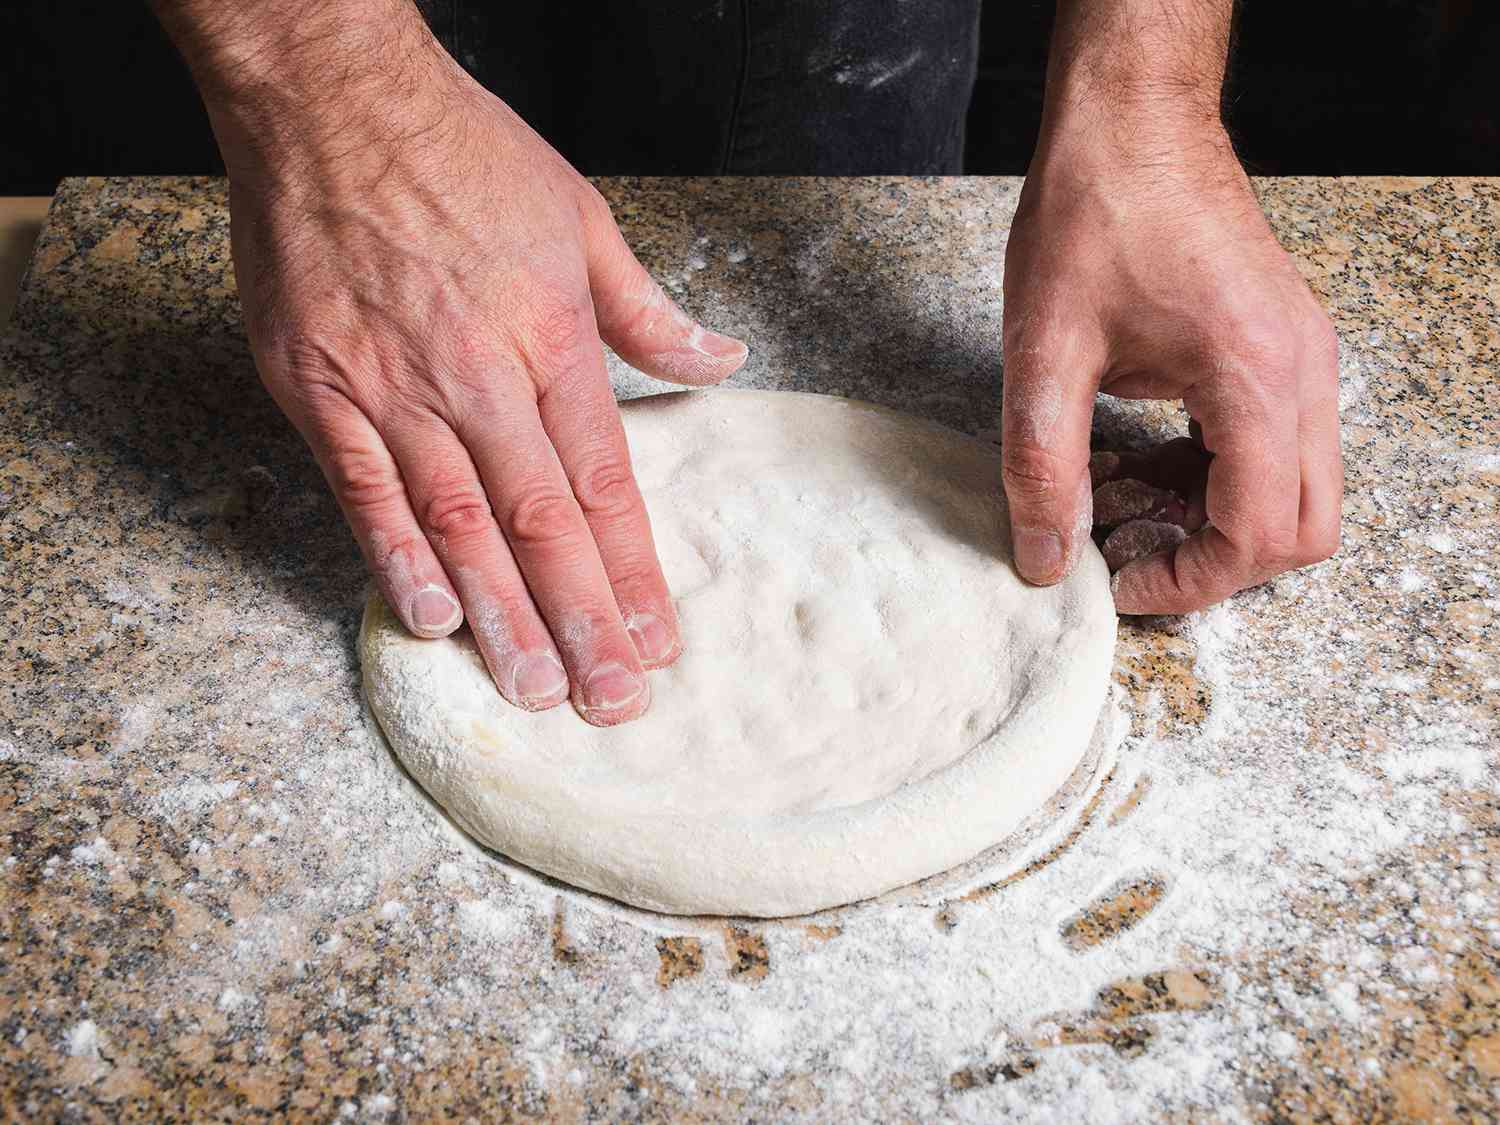 pizza-dough-recipe